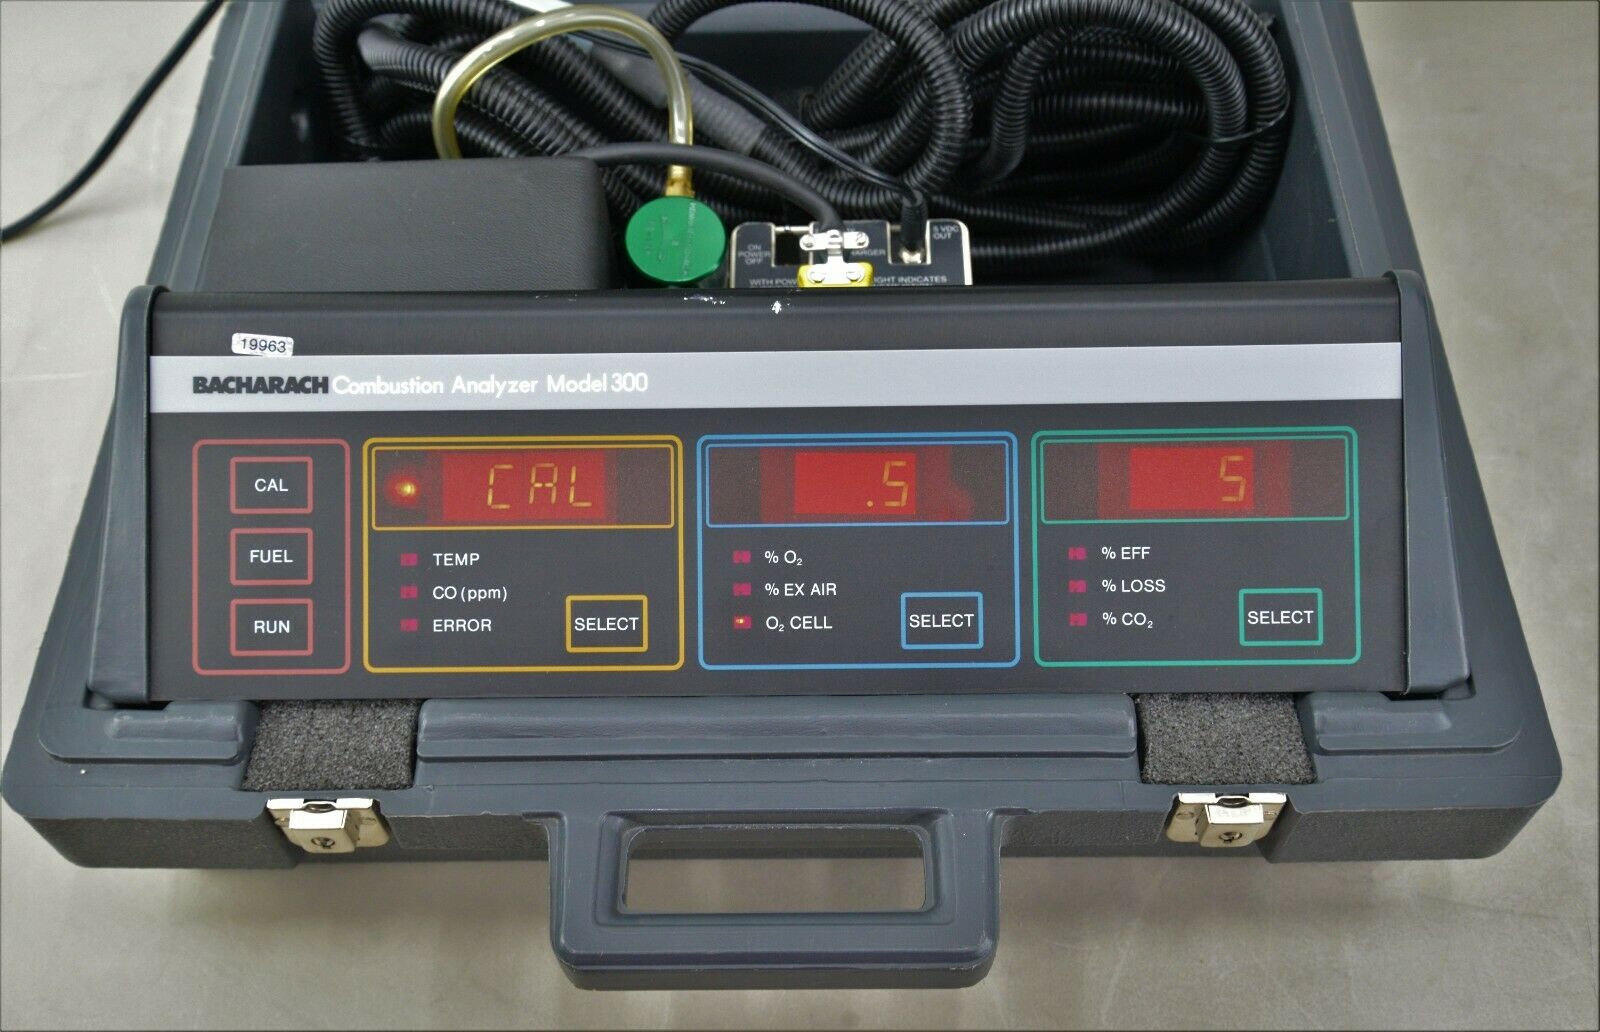 Bacharach Combustion Analyzer Model 300 Nox So2 Case Accessories W Keys 19963 Rhino Trade Llc